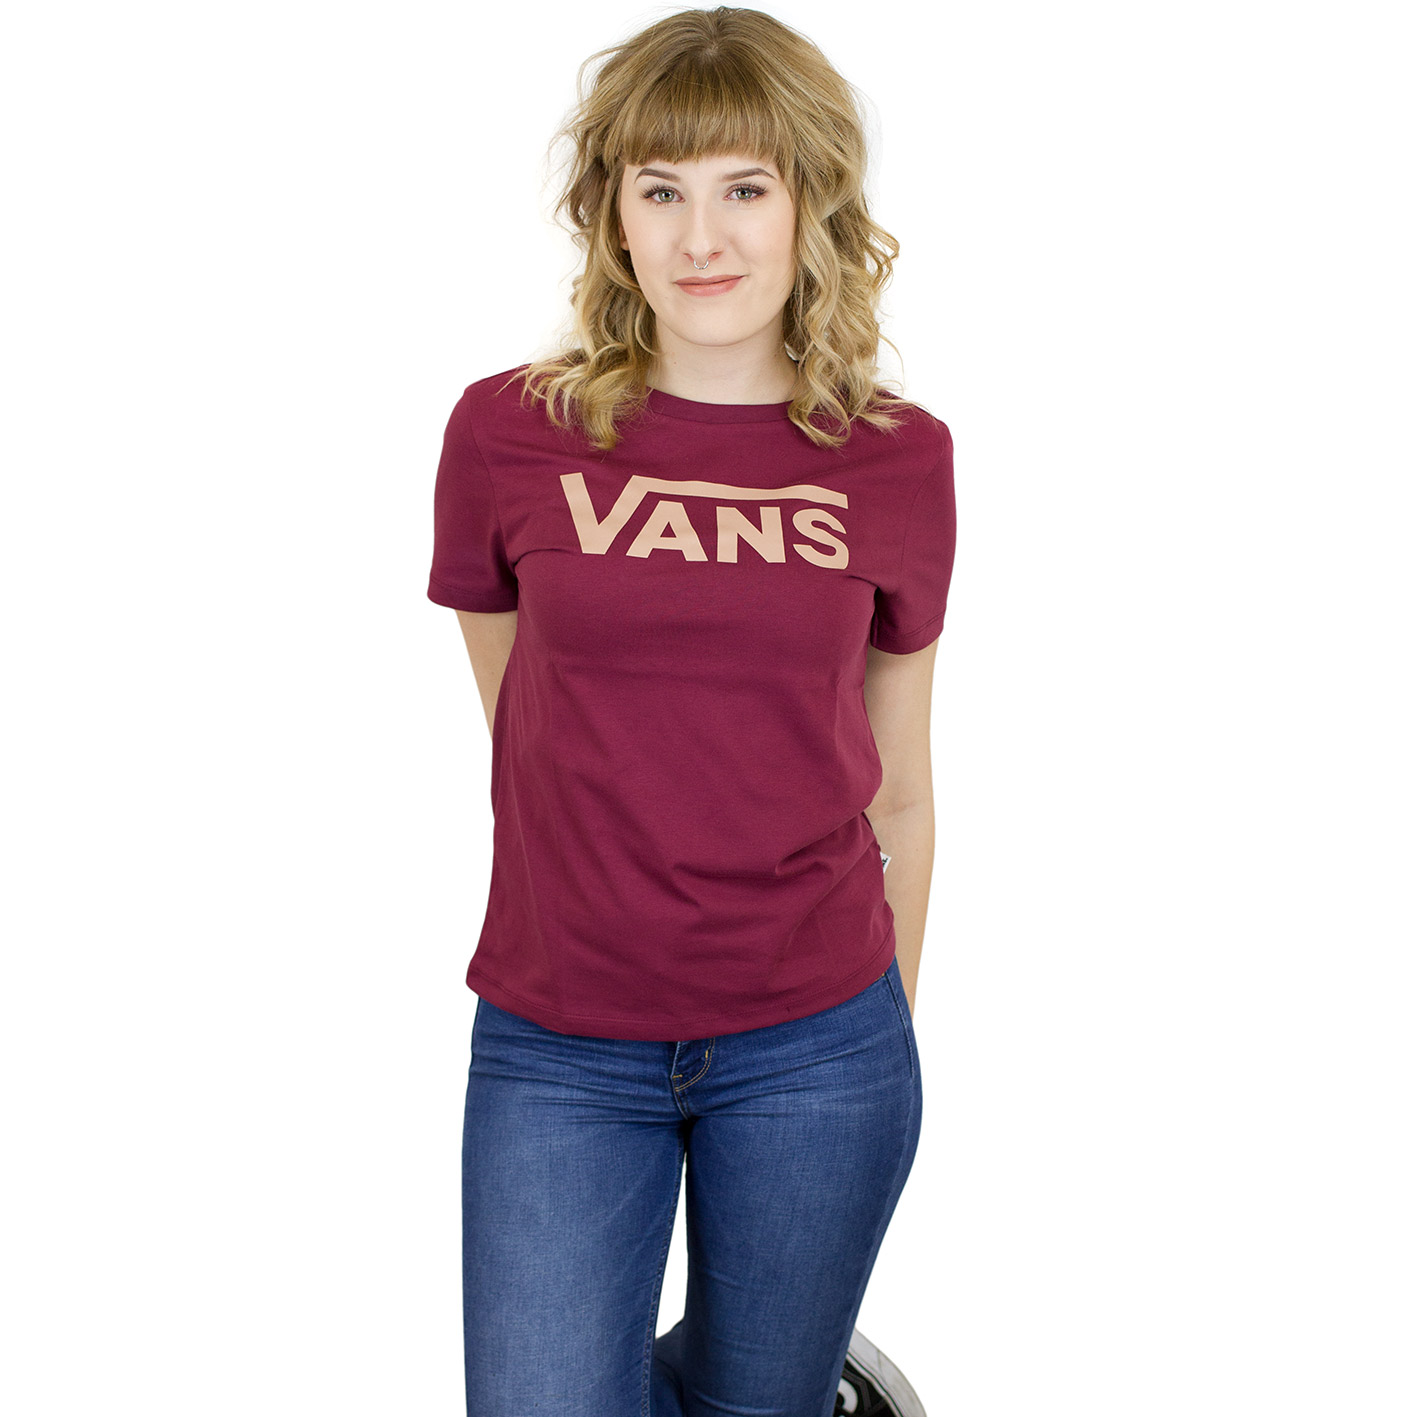 ☆ Vans Damen T-Shirt Flying V burgundy - hier bestellen!